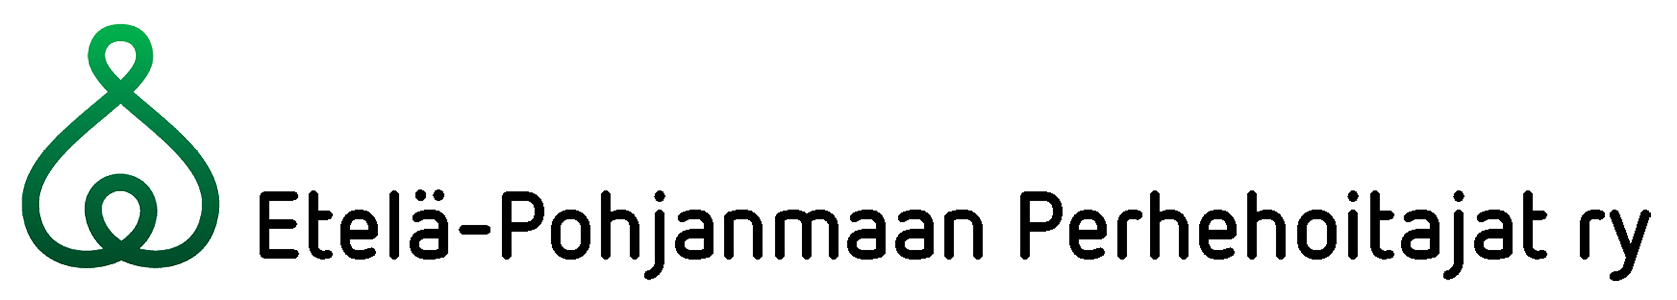 Etelä-Pohjanmaan Perhehoitajat ry:n logo